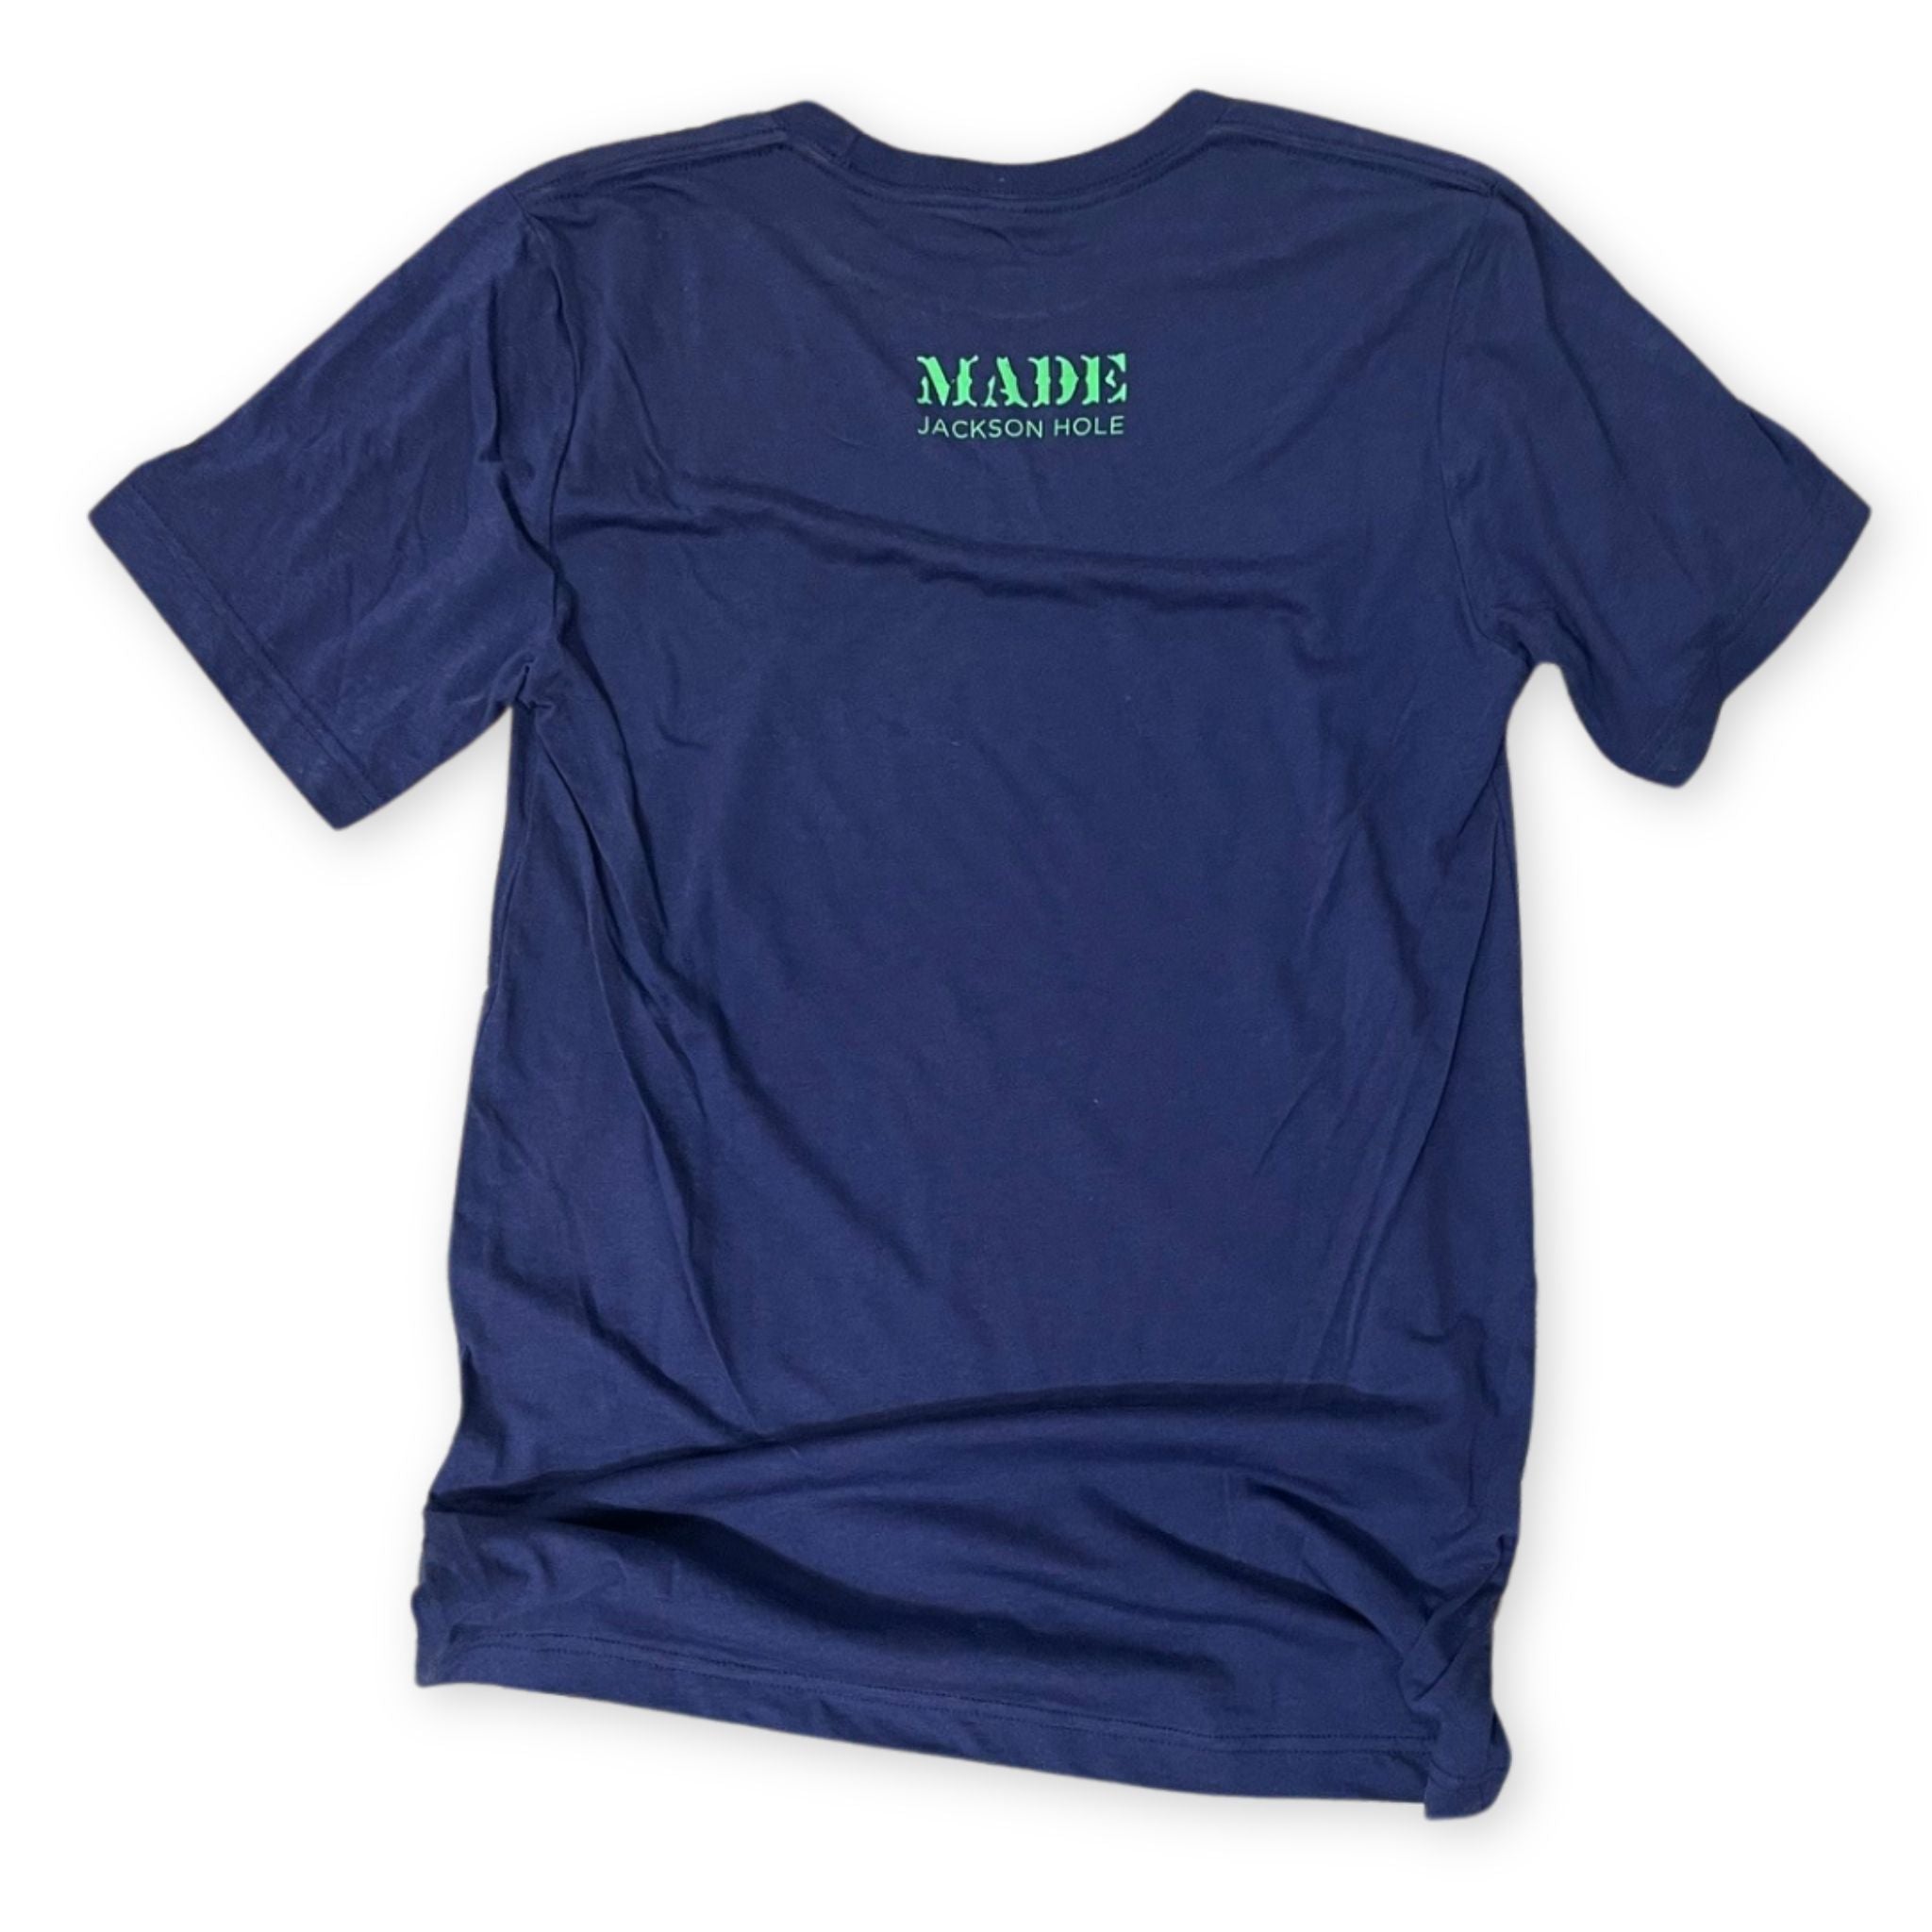 blue shirt with MADE logo